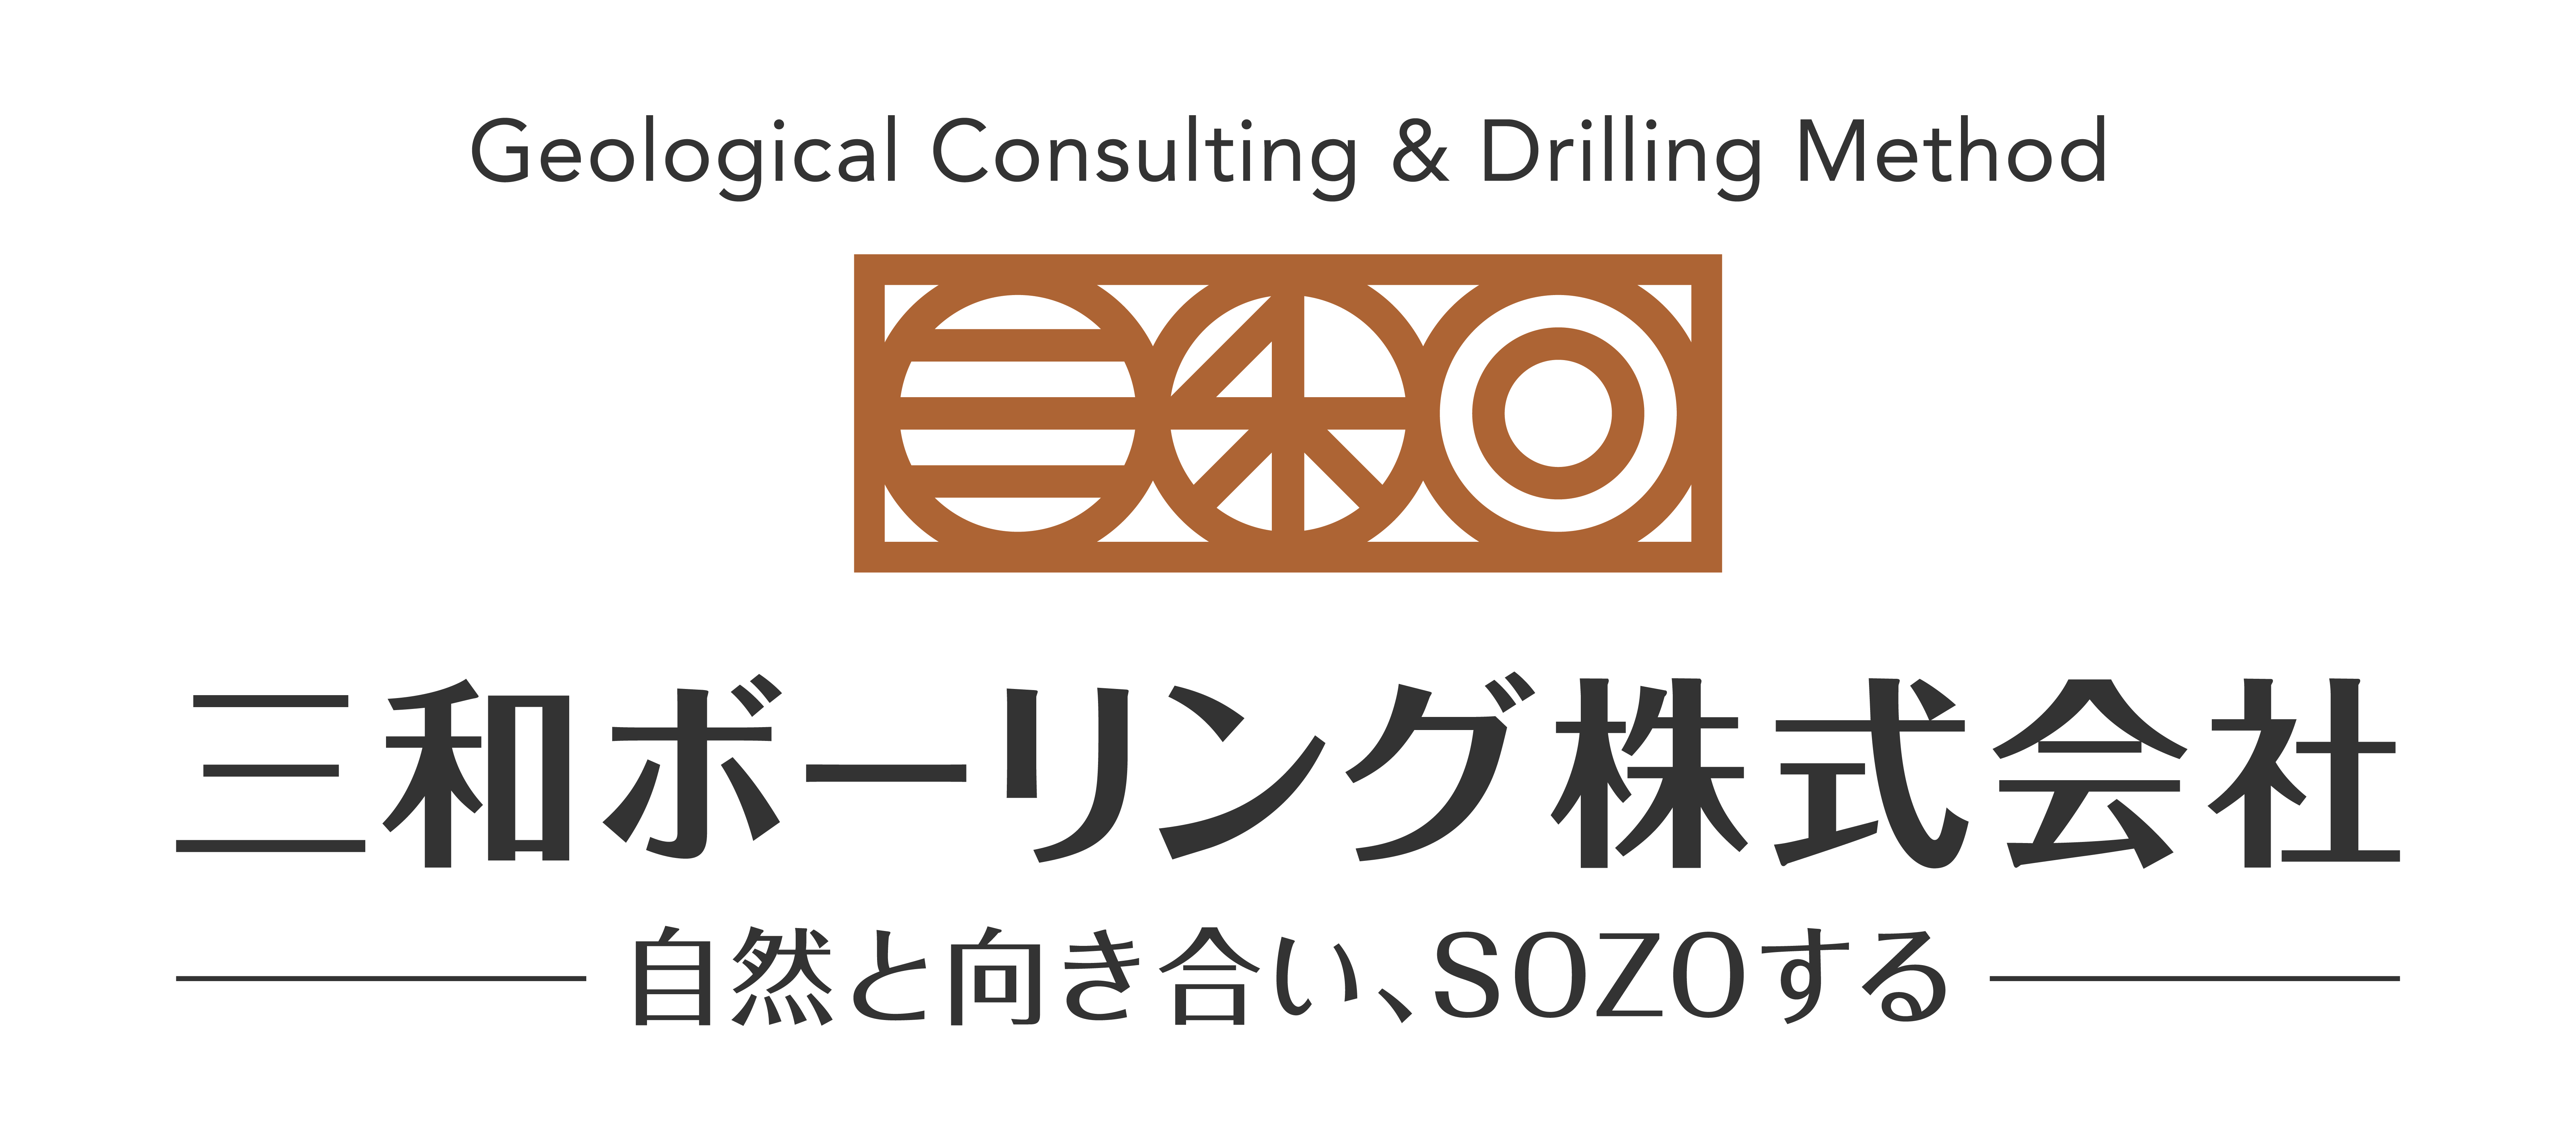 三和ボーリング株式会社のロゴ